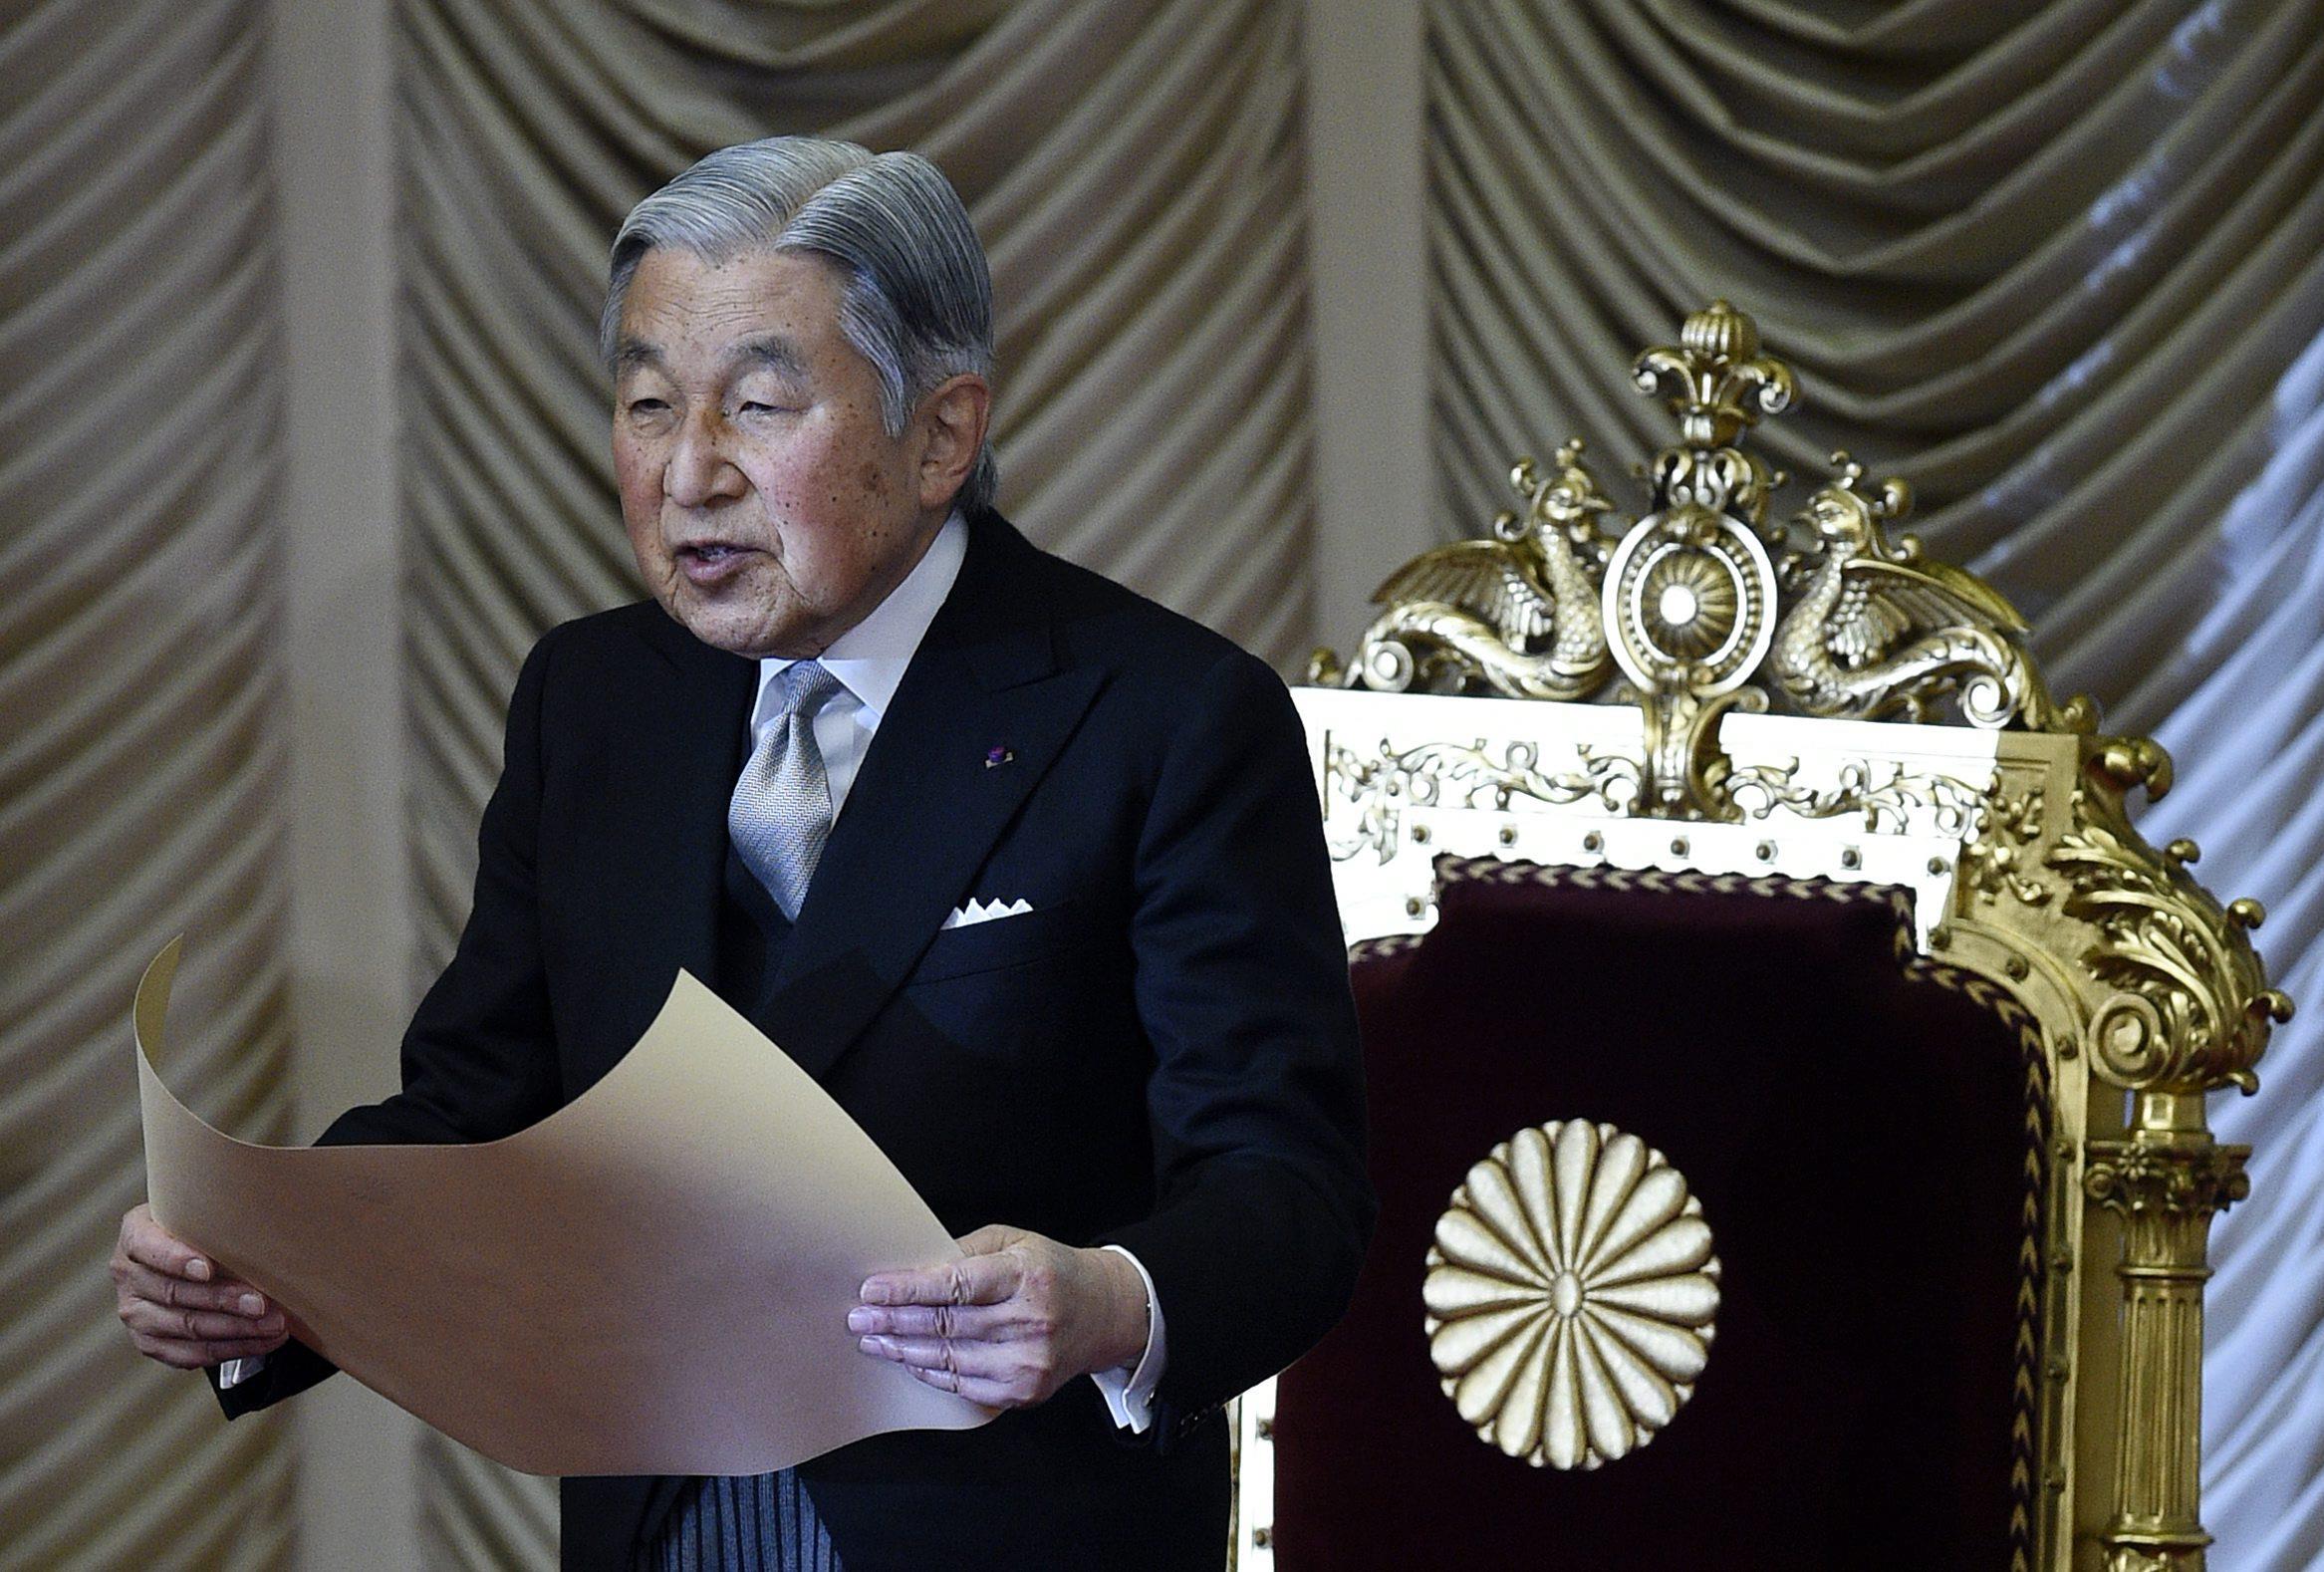 Cesarz Japonii Akihito abdykuje, następca tronu Naruhito - Świat -  Newsweek.pl